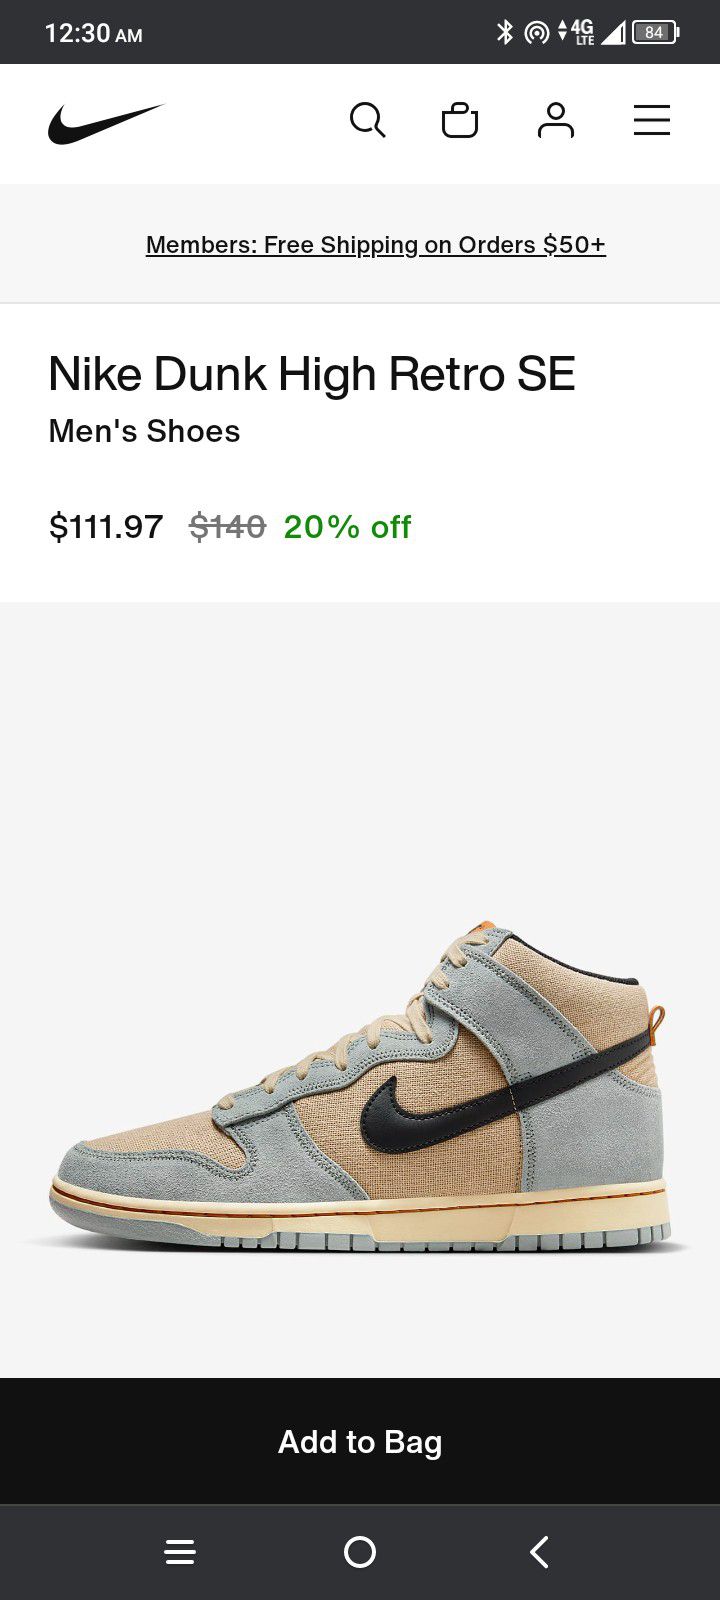 Nike Dunk Retro SE Retail $140